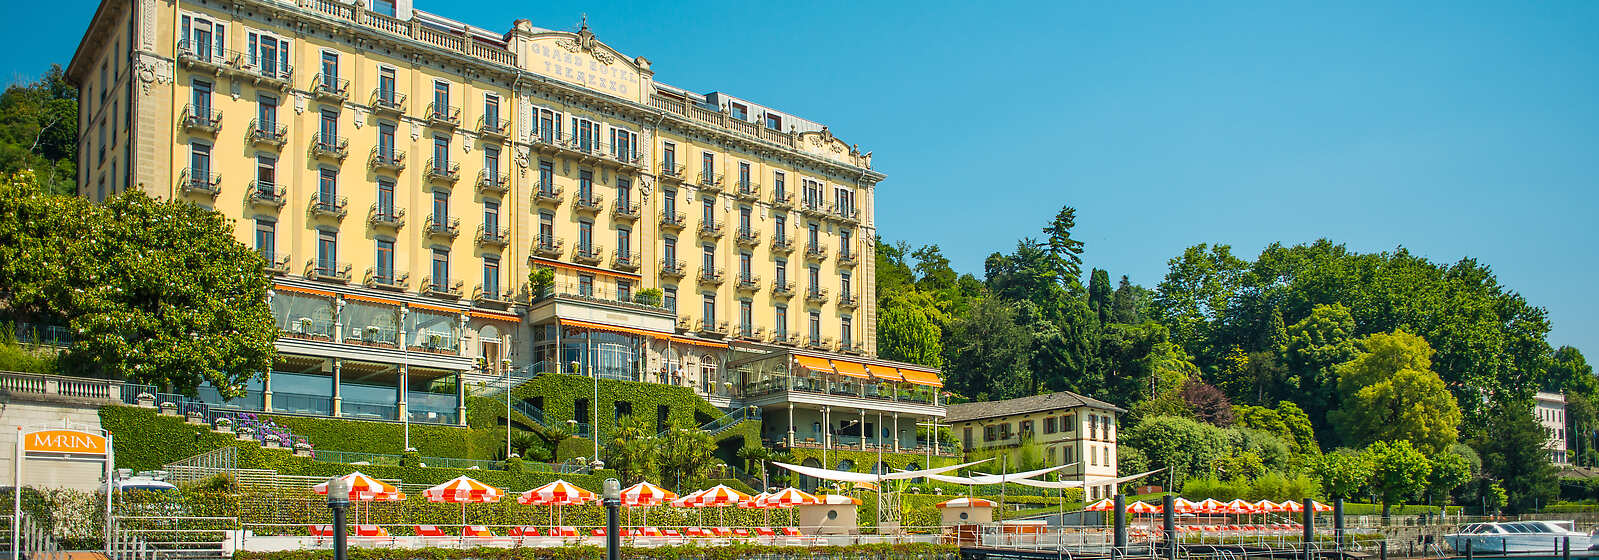 Grand Hotel Tremezzo facade